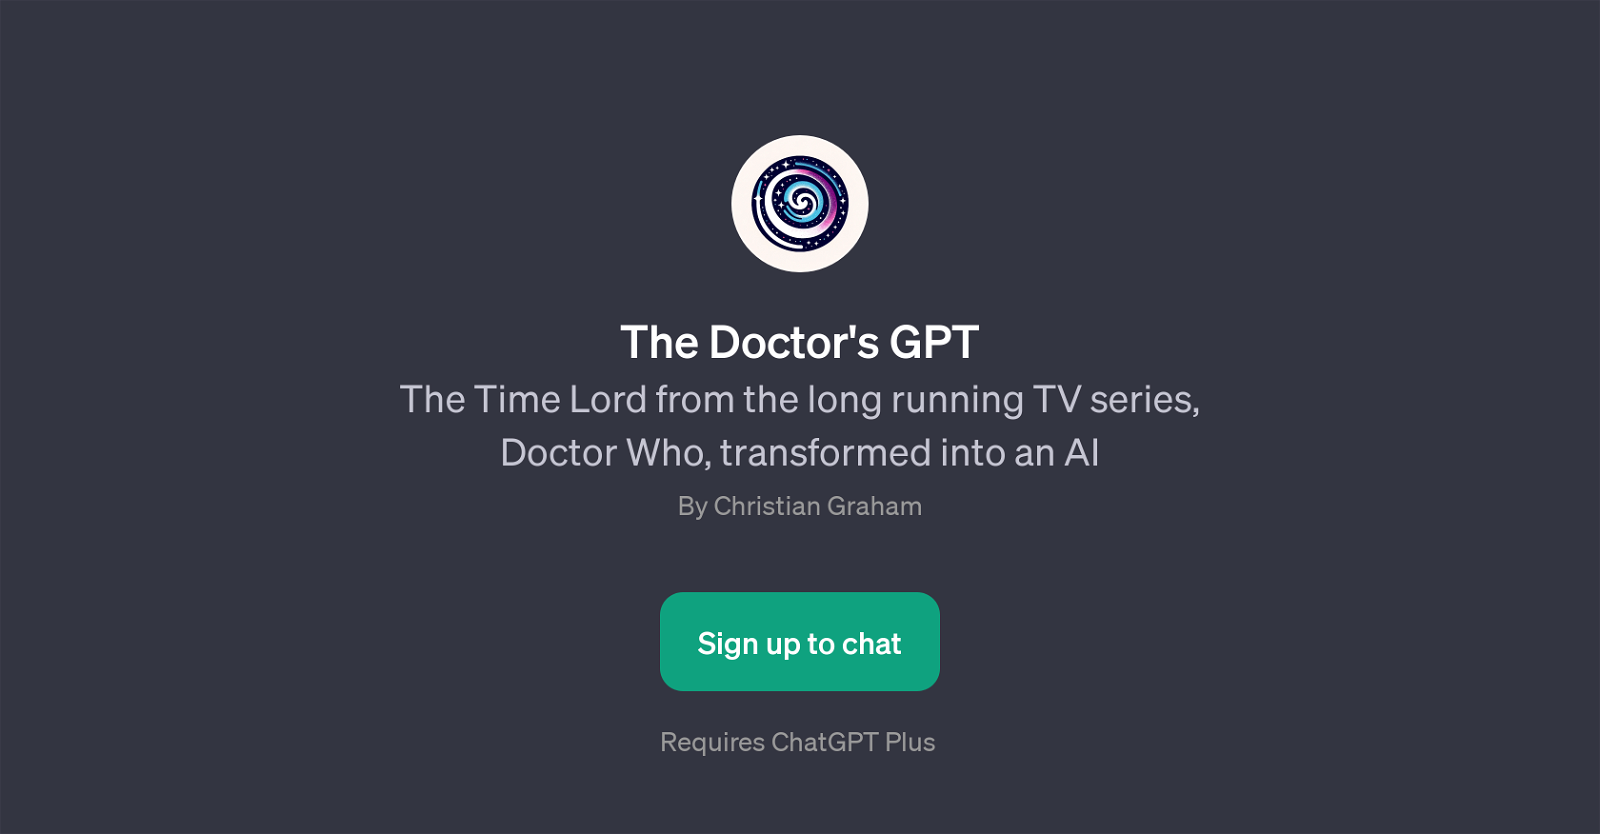 The Doctor's GPT website